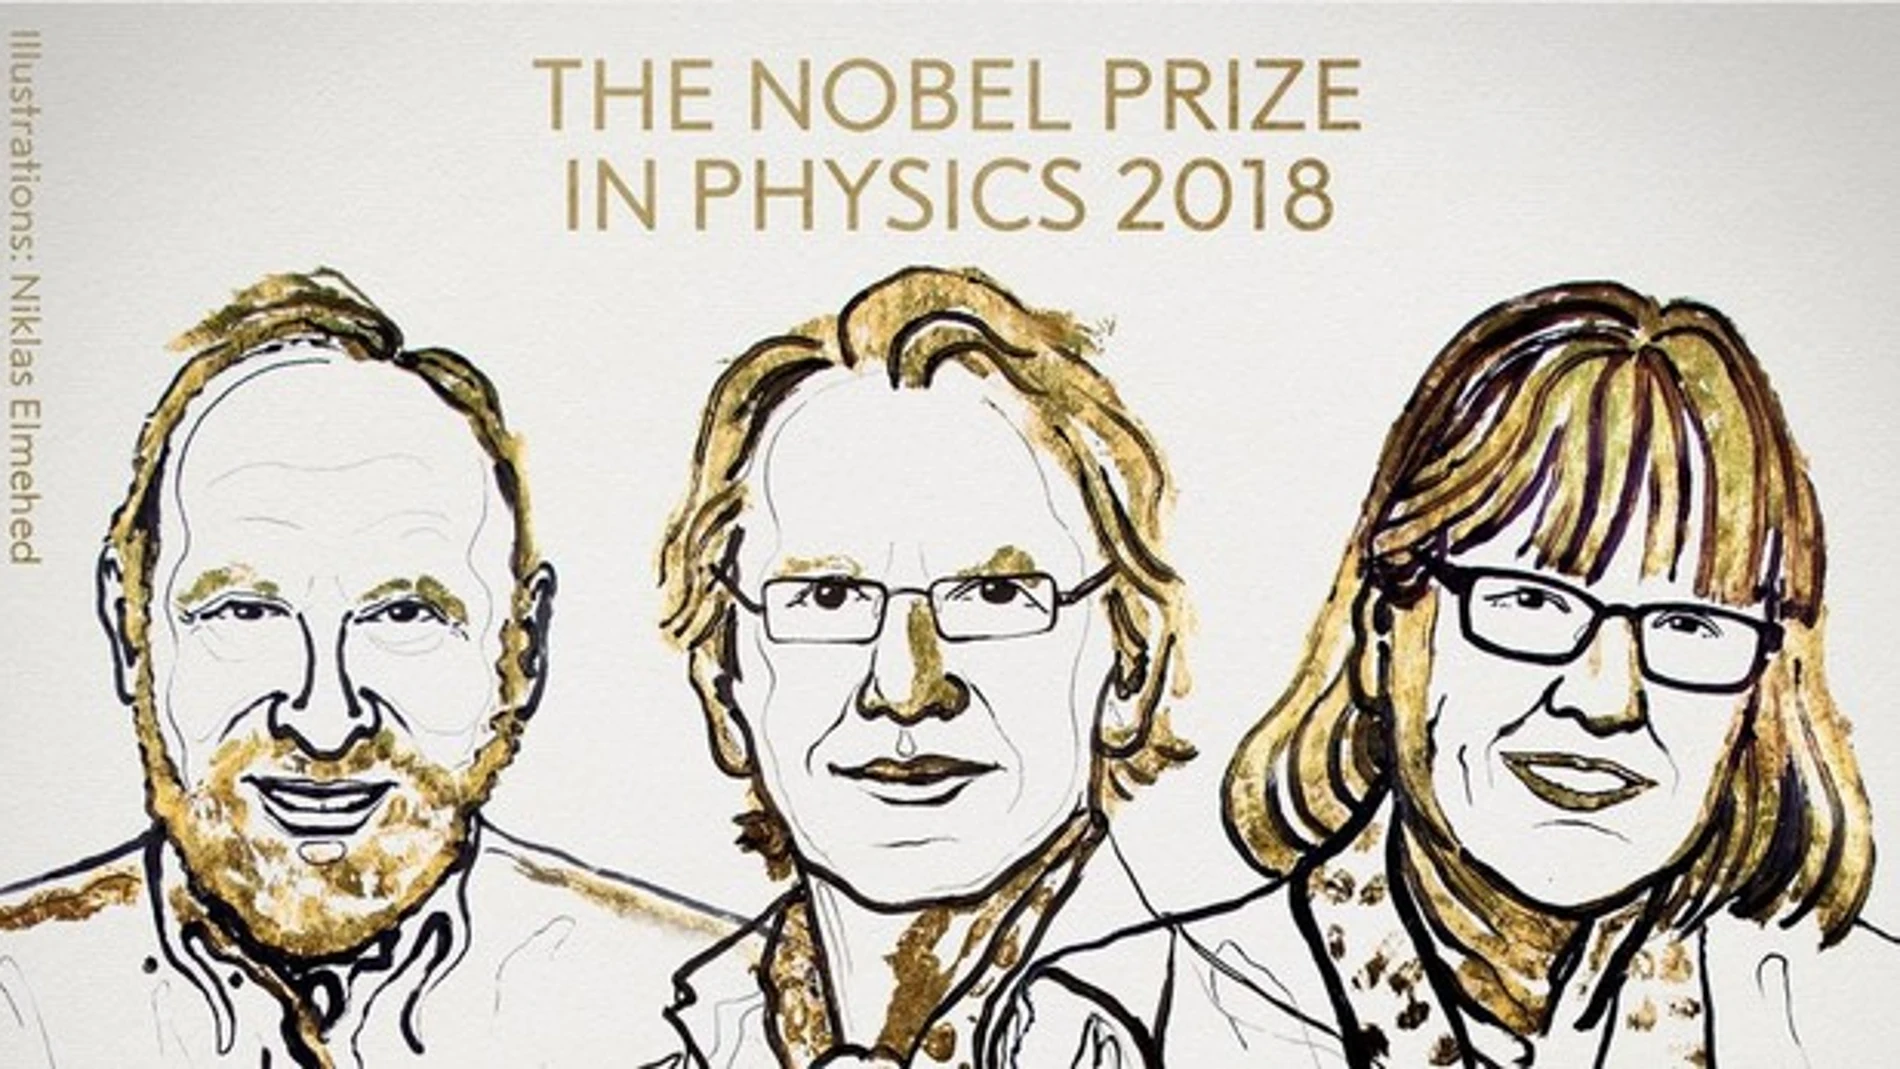 Imagen de los premios Nobel de Física